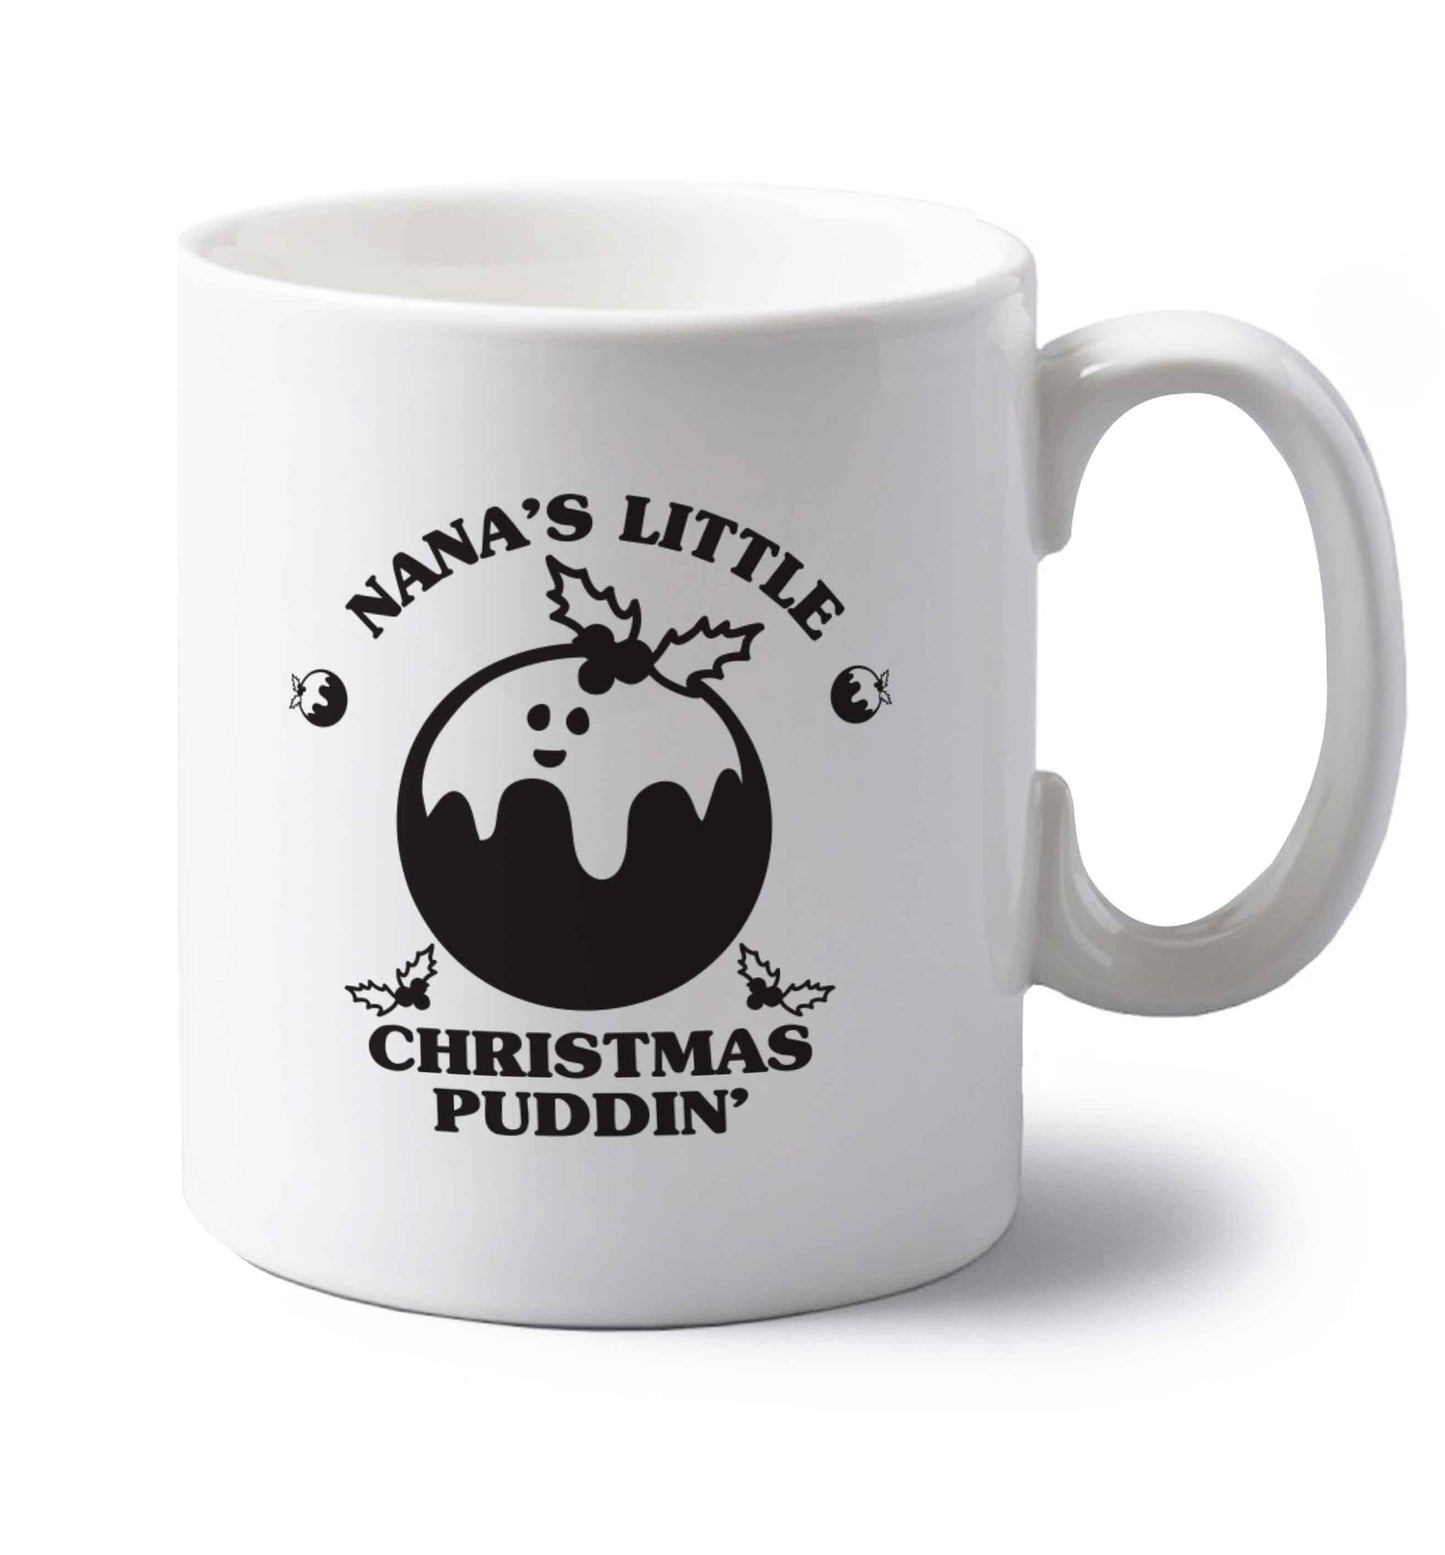 Nana's little Christmas puddin' left handed white ceramic mug 